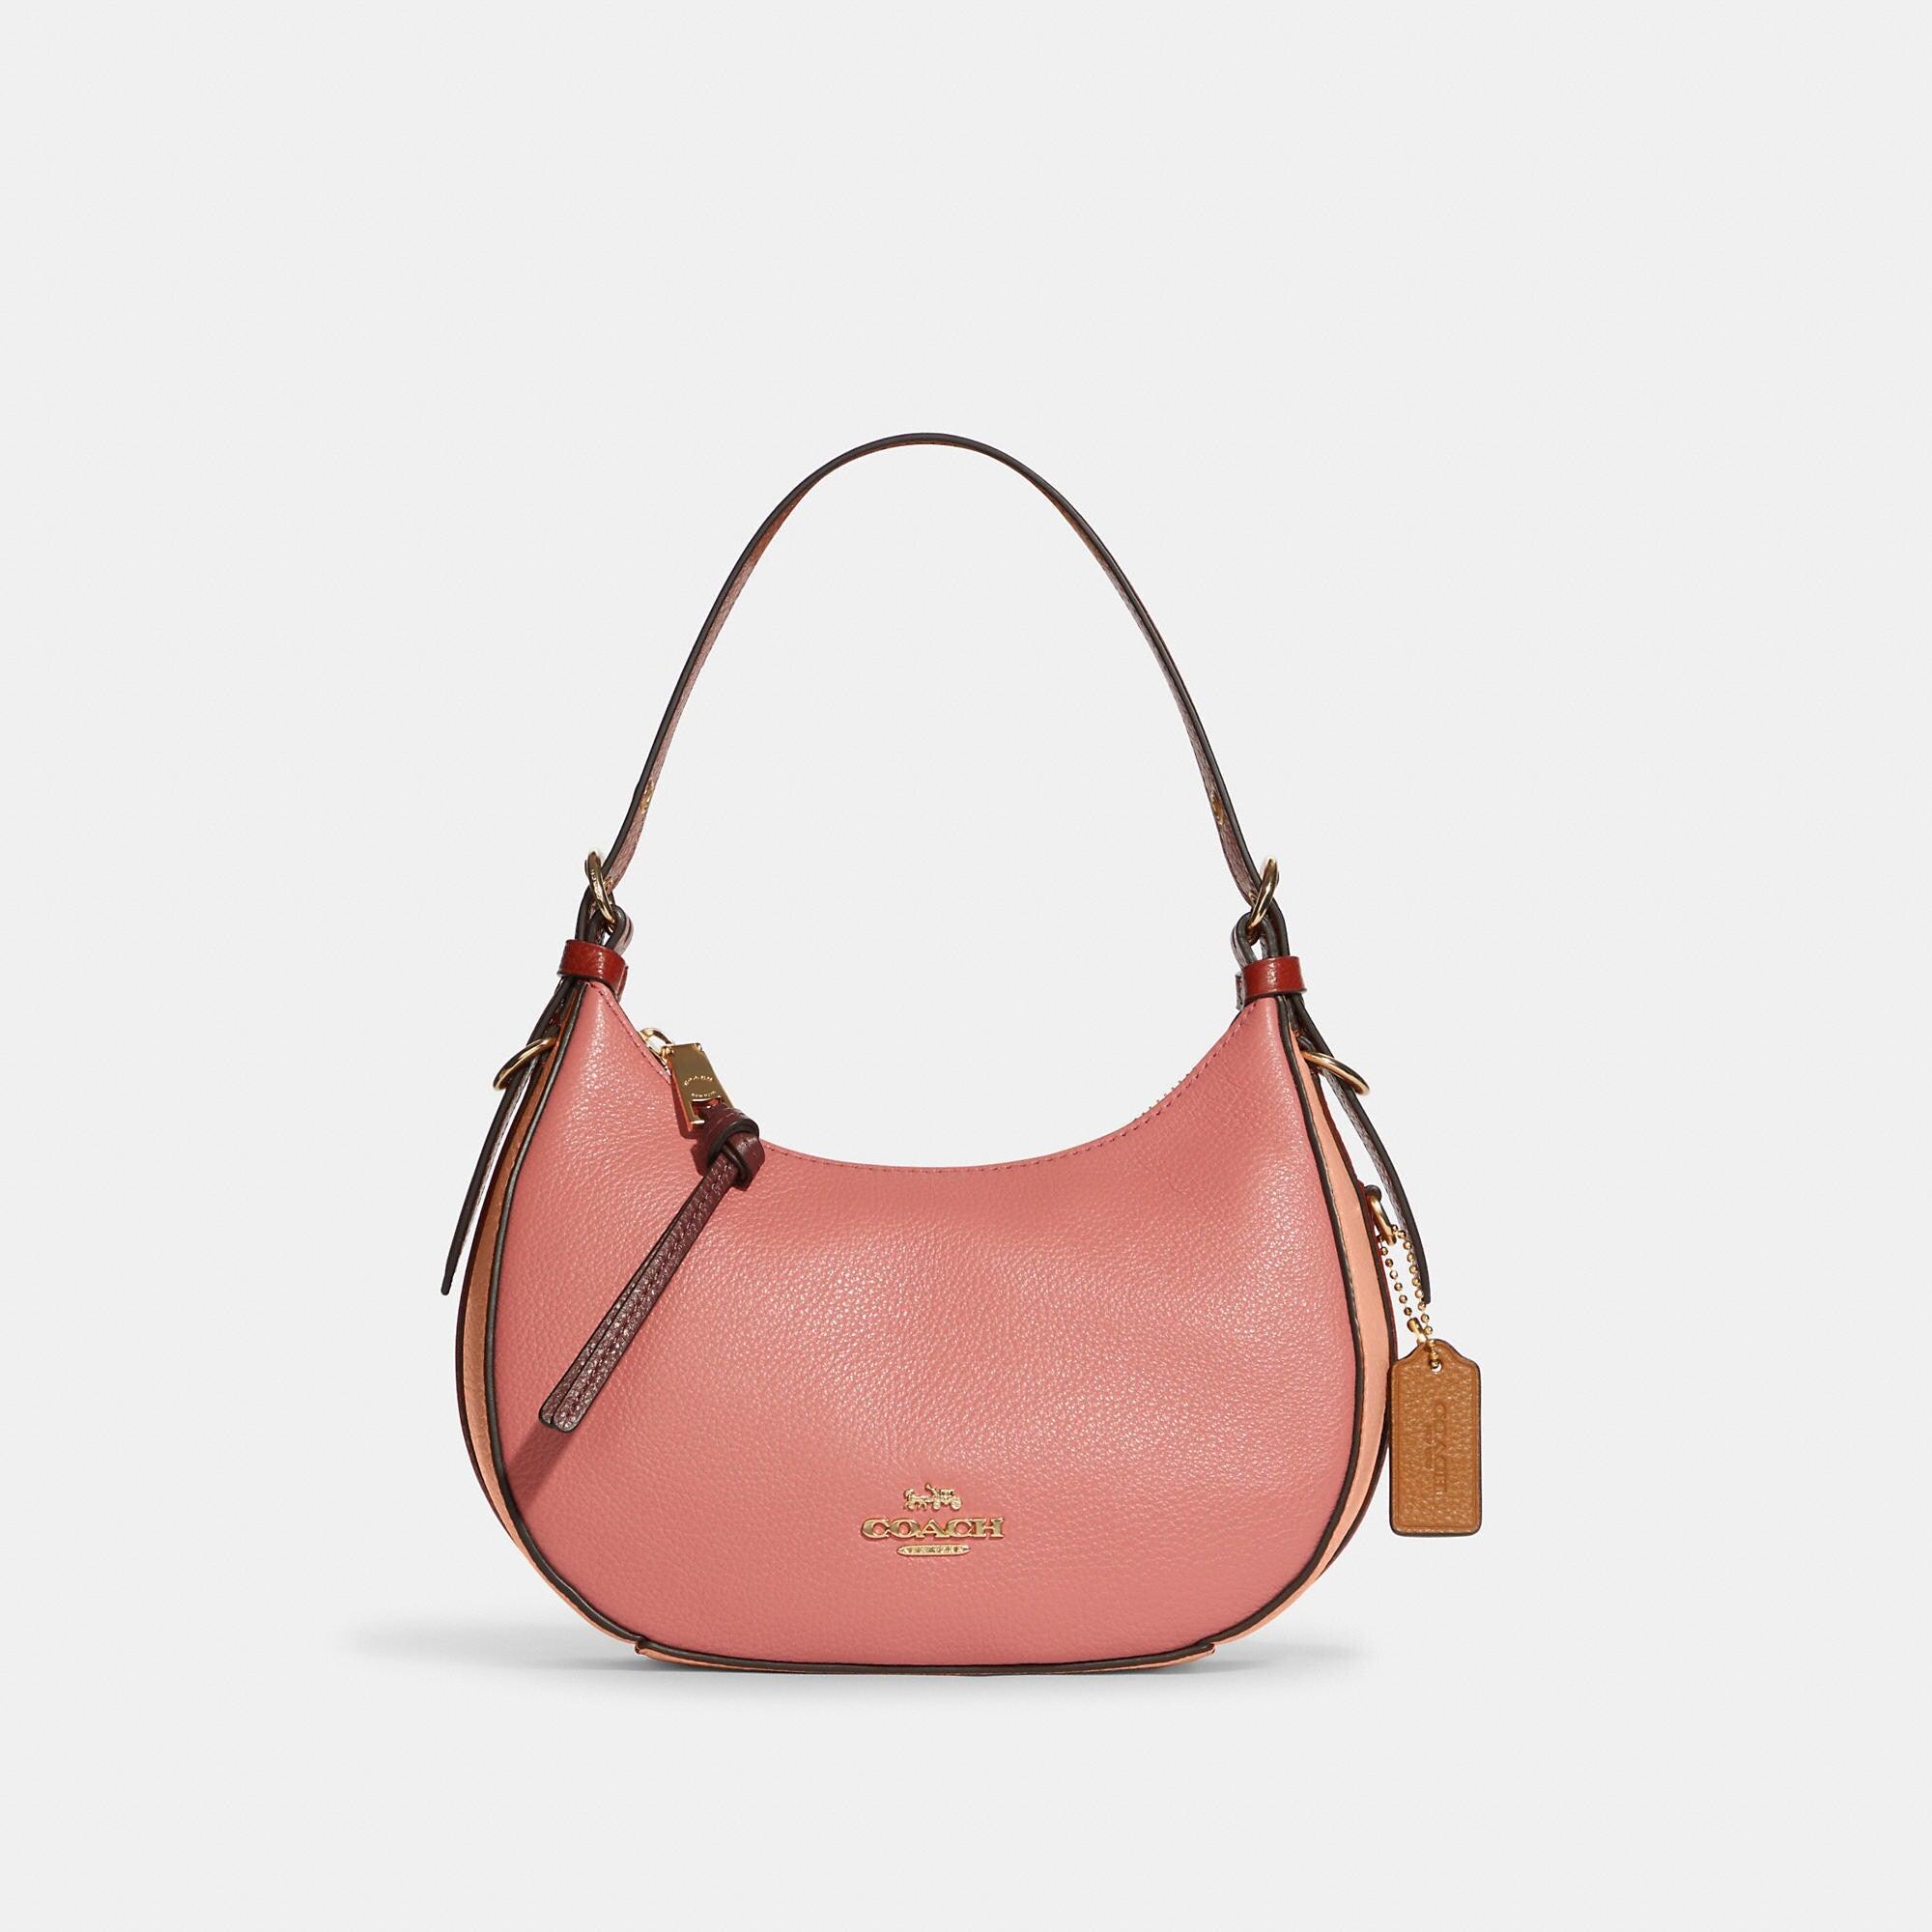 Large hobo bag, Gradient calfskin & gold-tone metal, pink, orange & yellow  — Fashion